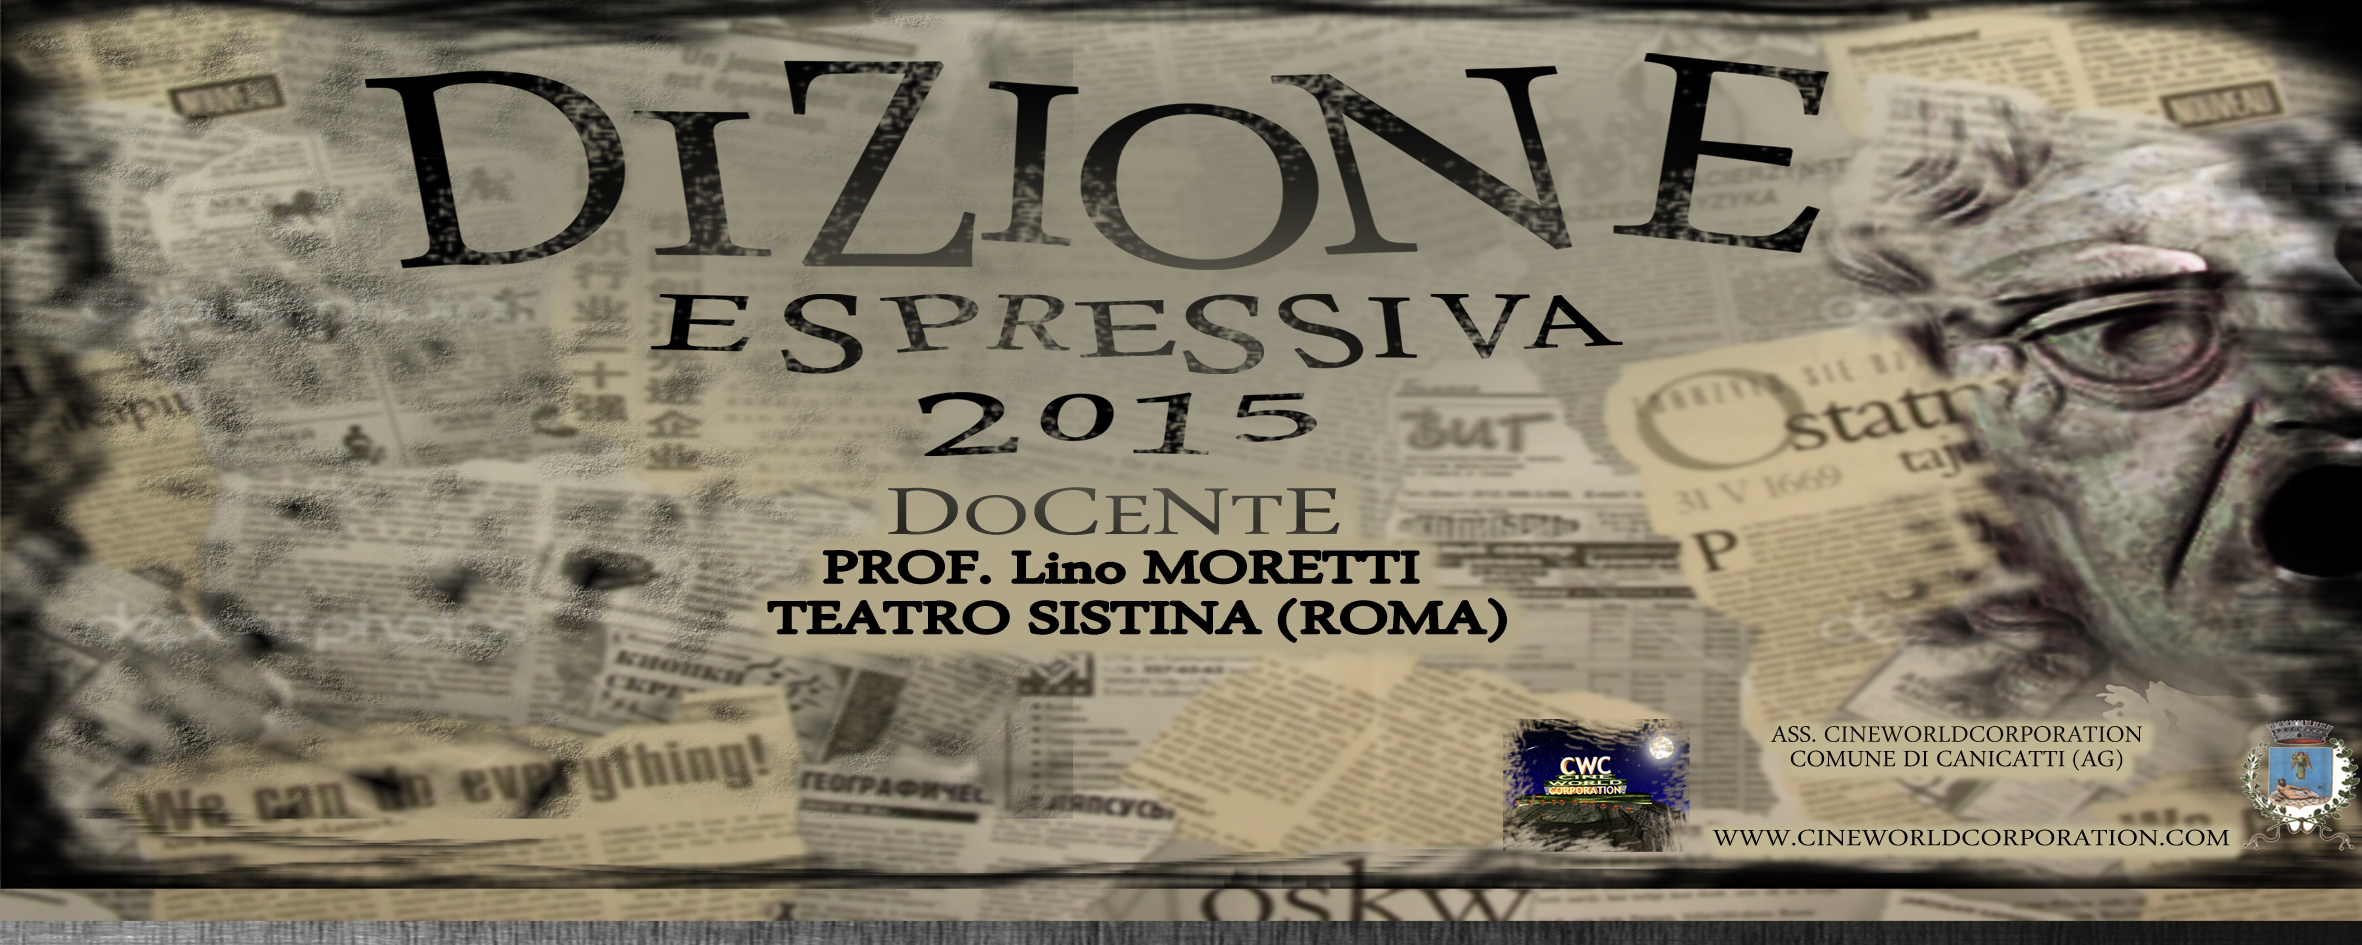 Canicattì, Cineworldcorporation: Parte ufficialmente Dizione Espressiva 2015